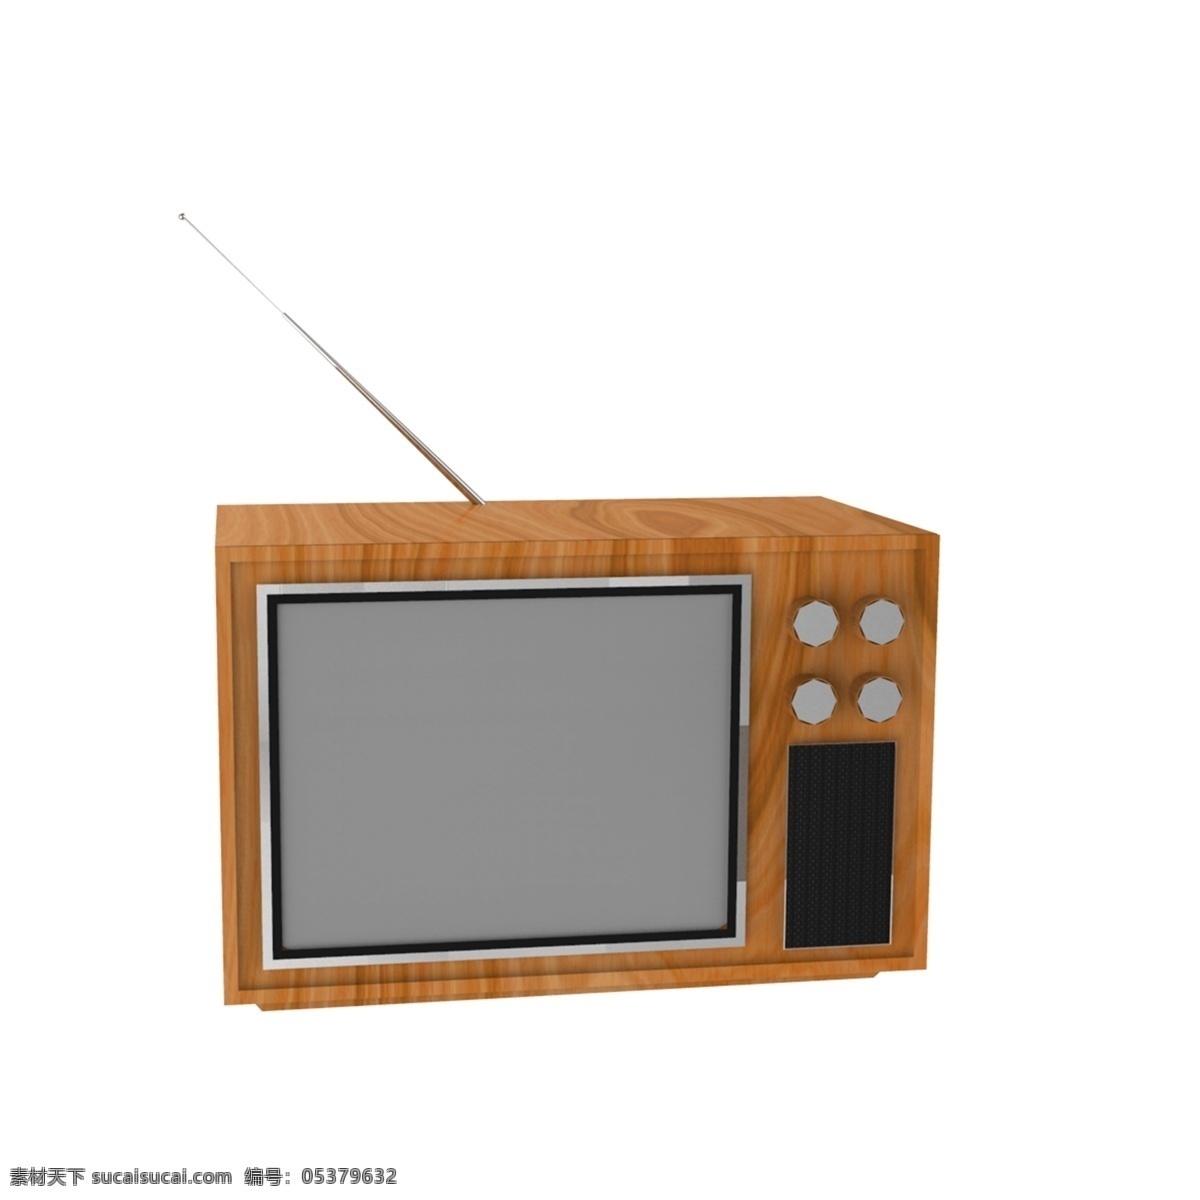 仿真 小 电视机 免 抠 复古电视 原木 电器